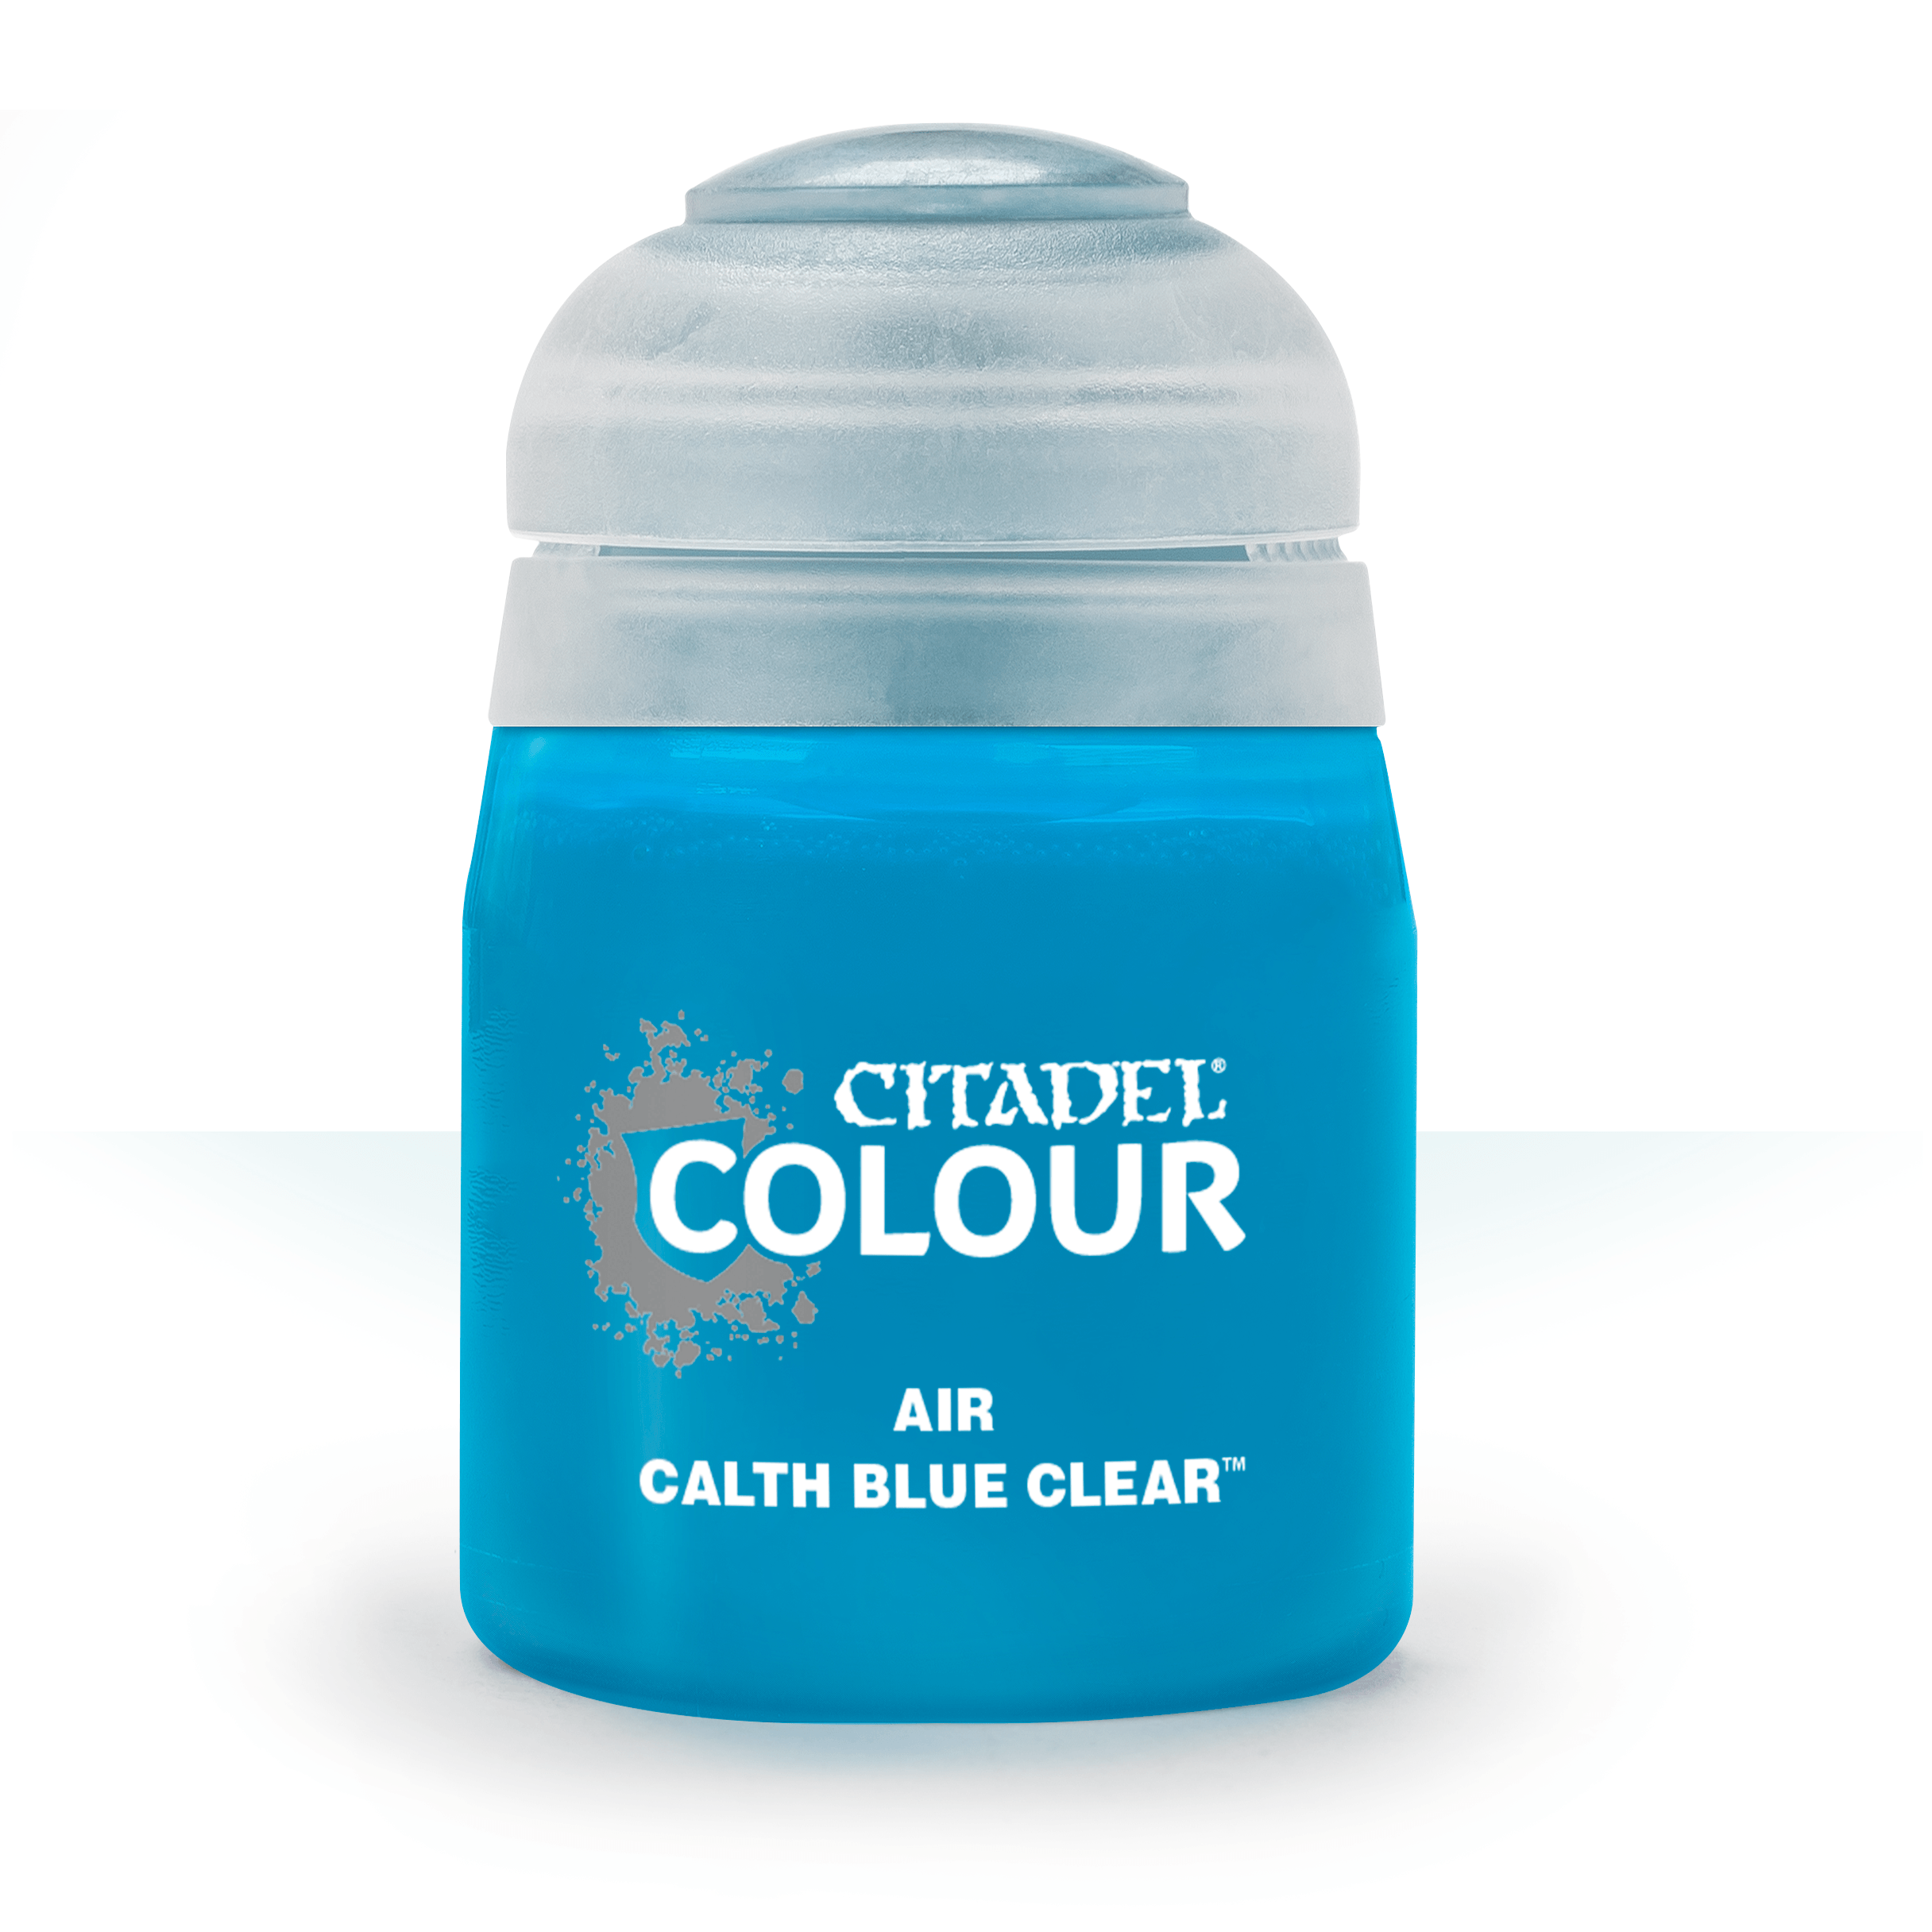 Air Calth Blue Clear - Citadel Colour - 24 ml